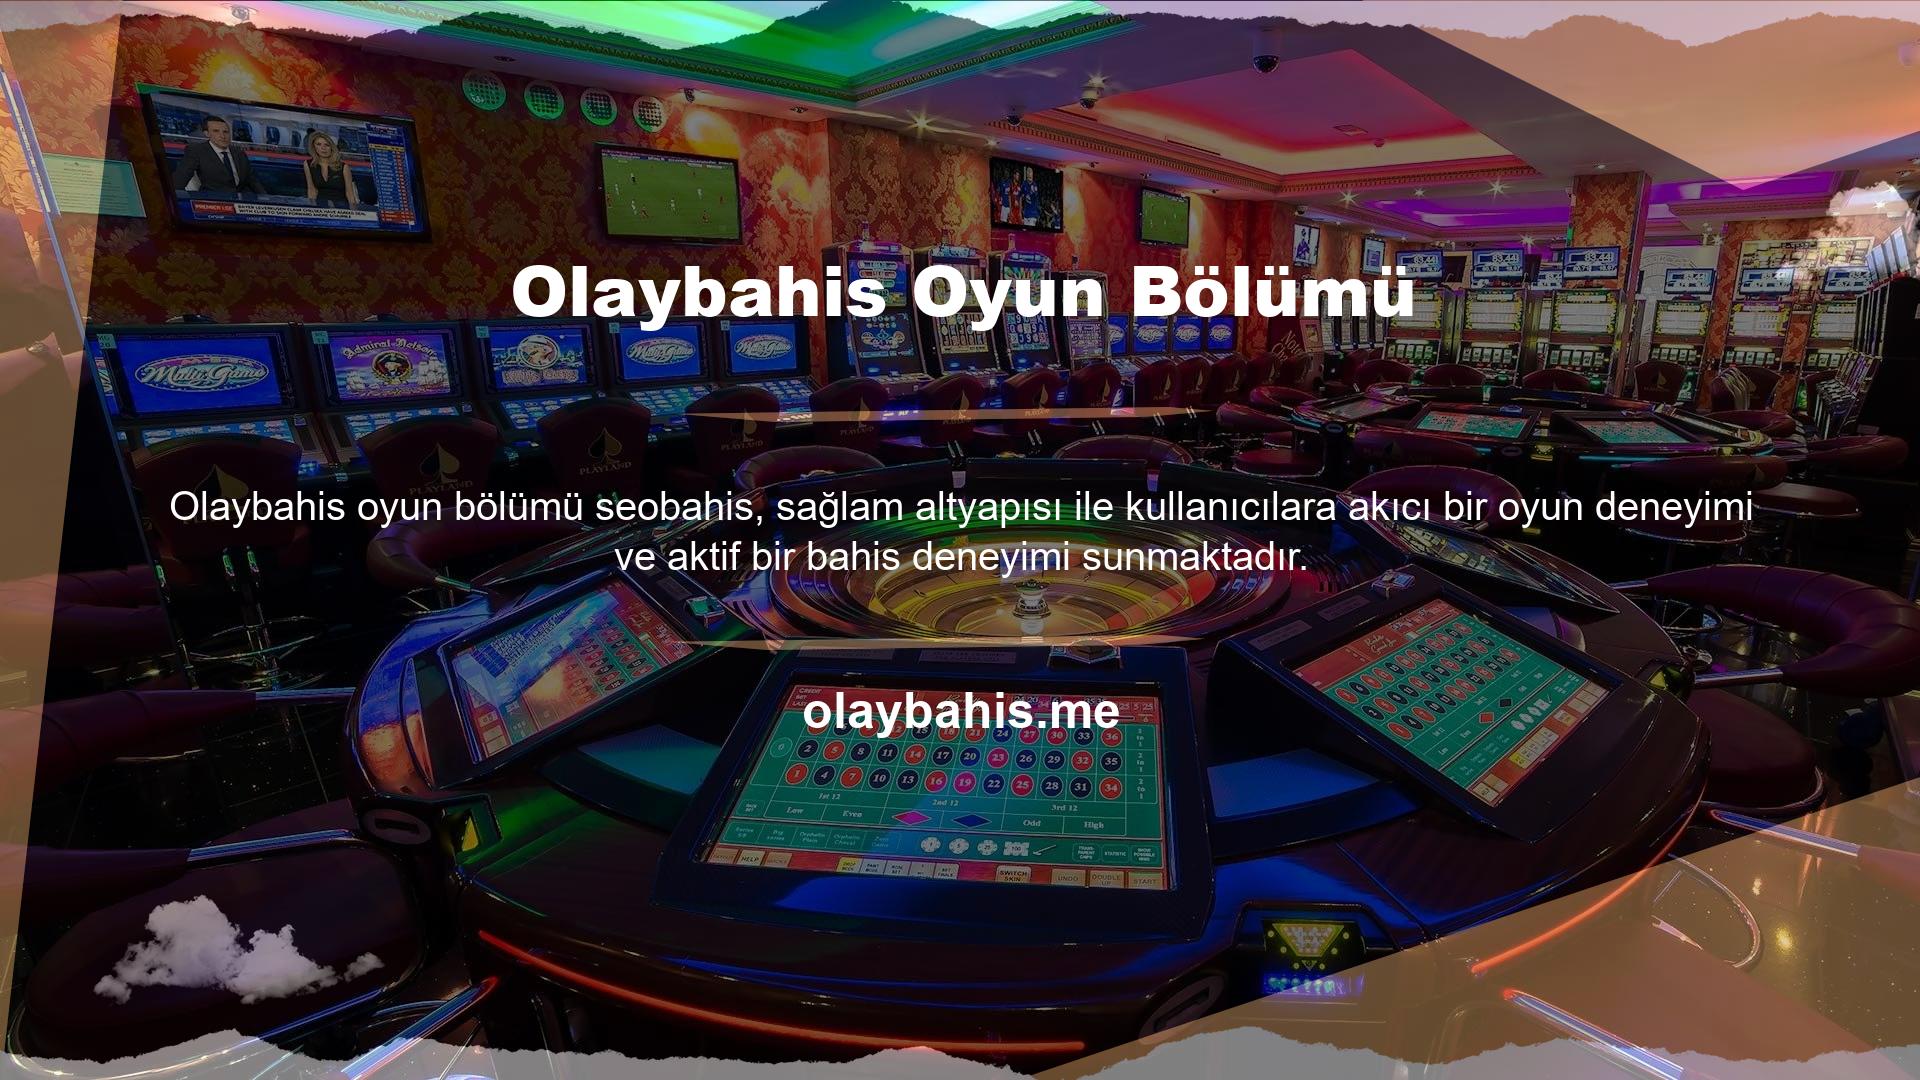 Olaybahis TV Oyunları bölümü, en popüler TV oyunlarına bahis yapmak için basit bir yaklaşım sağlar